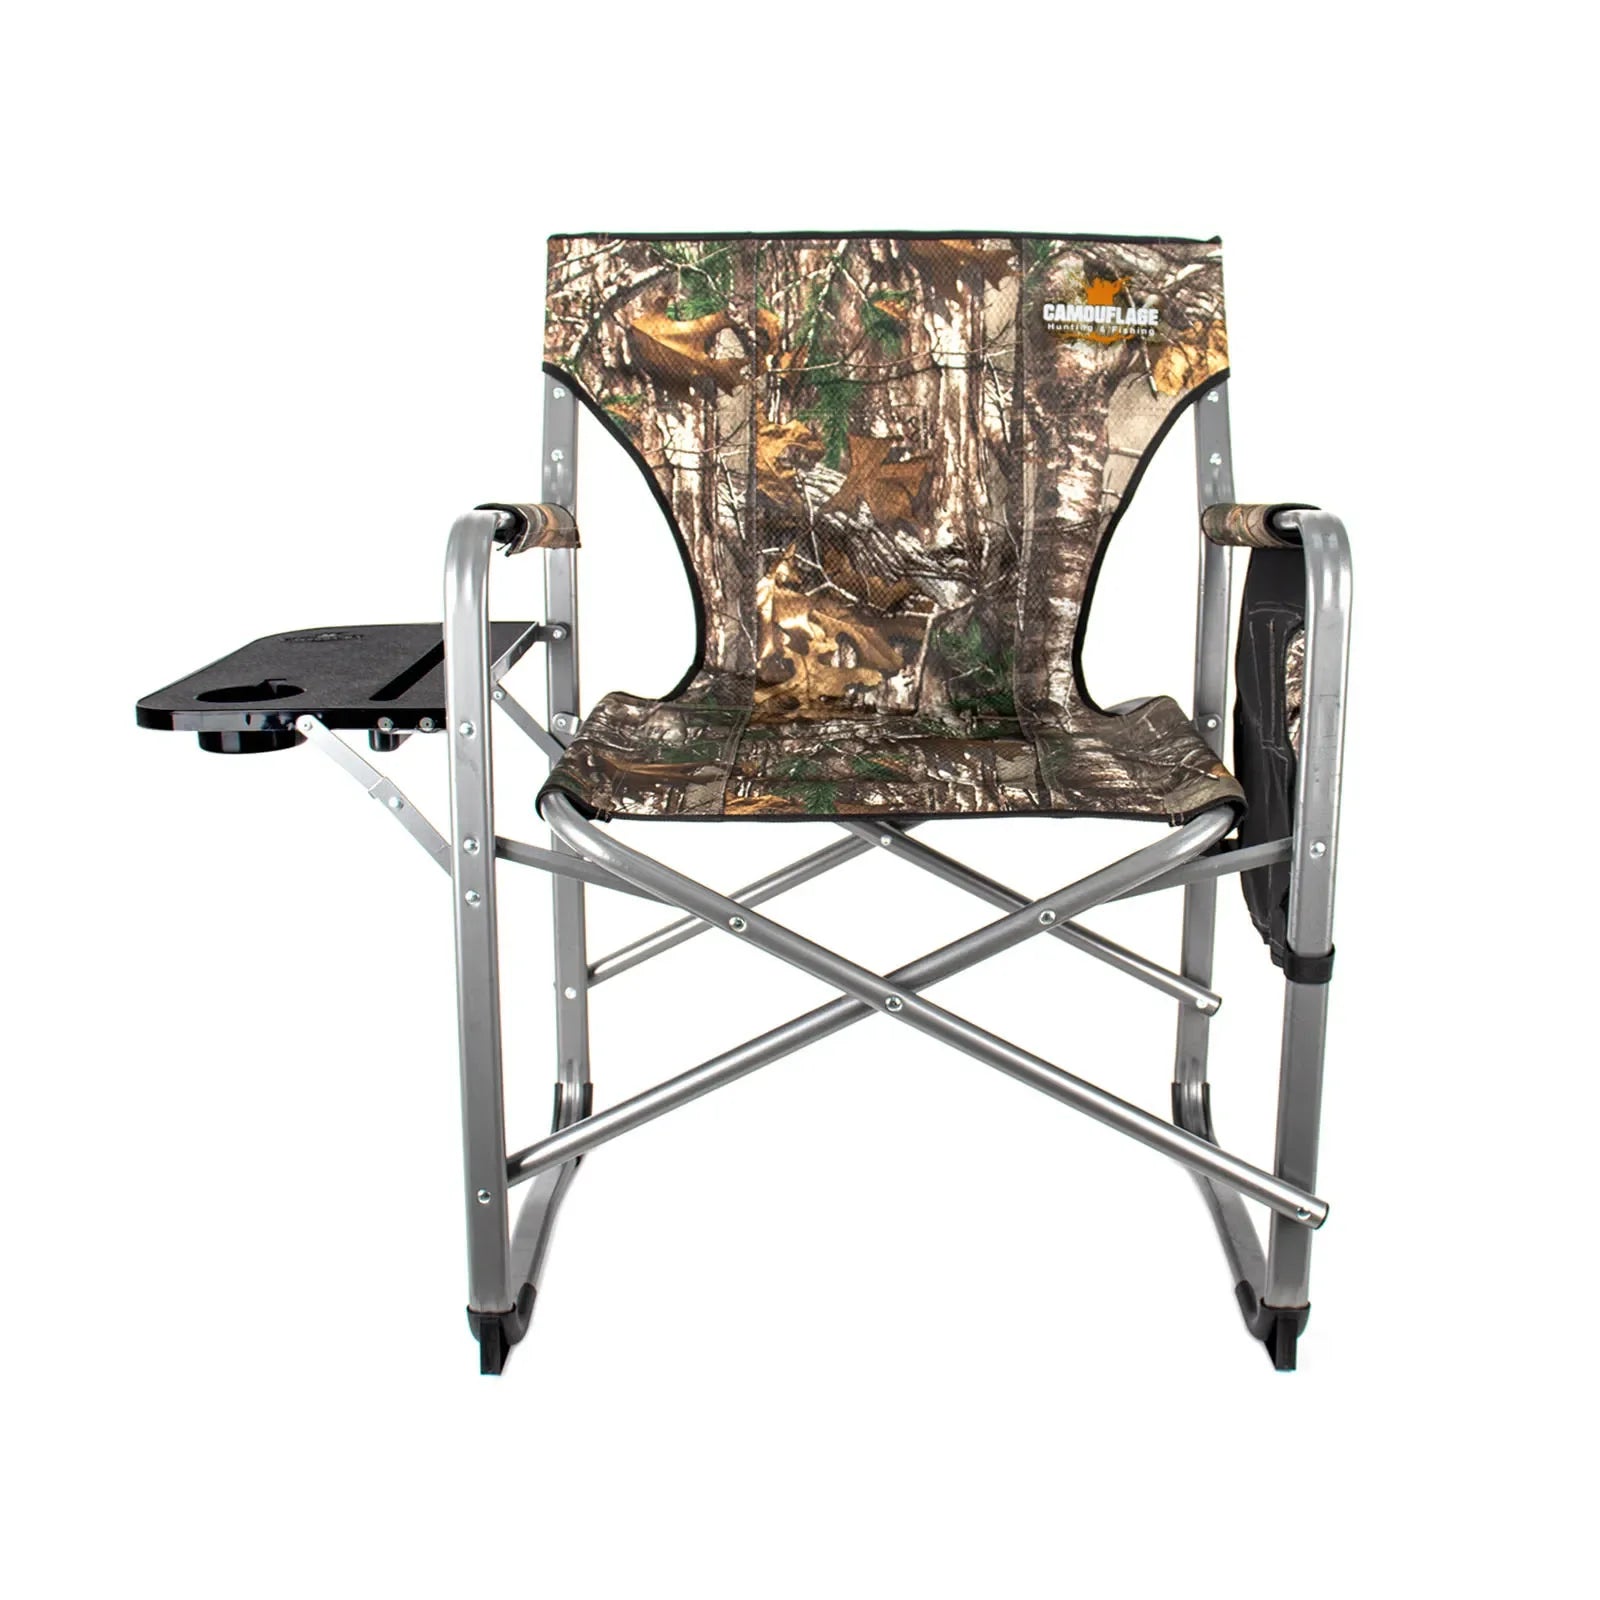 Aluminium Folding Chair with Table-Camo-8022